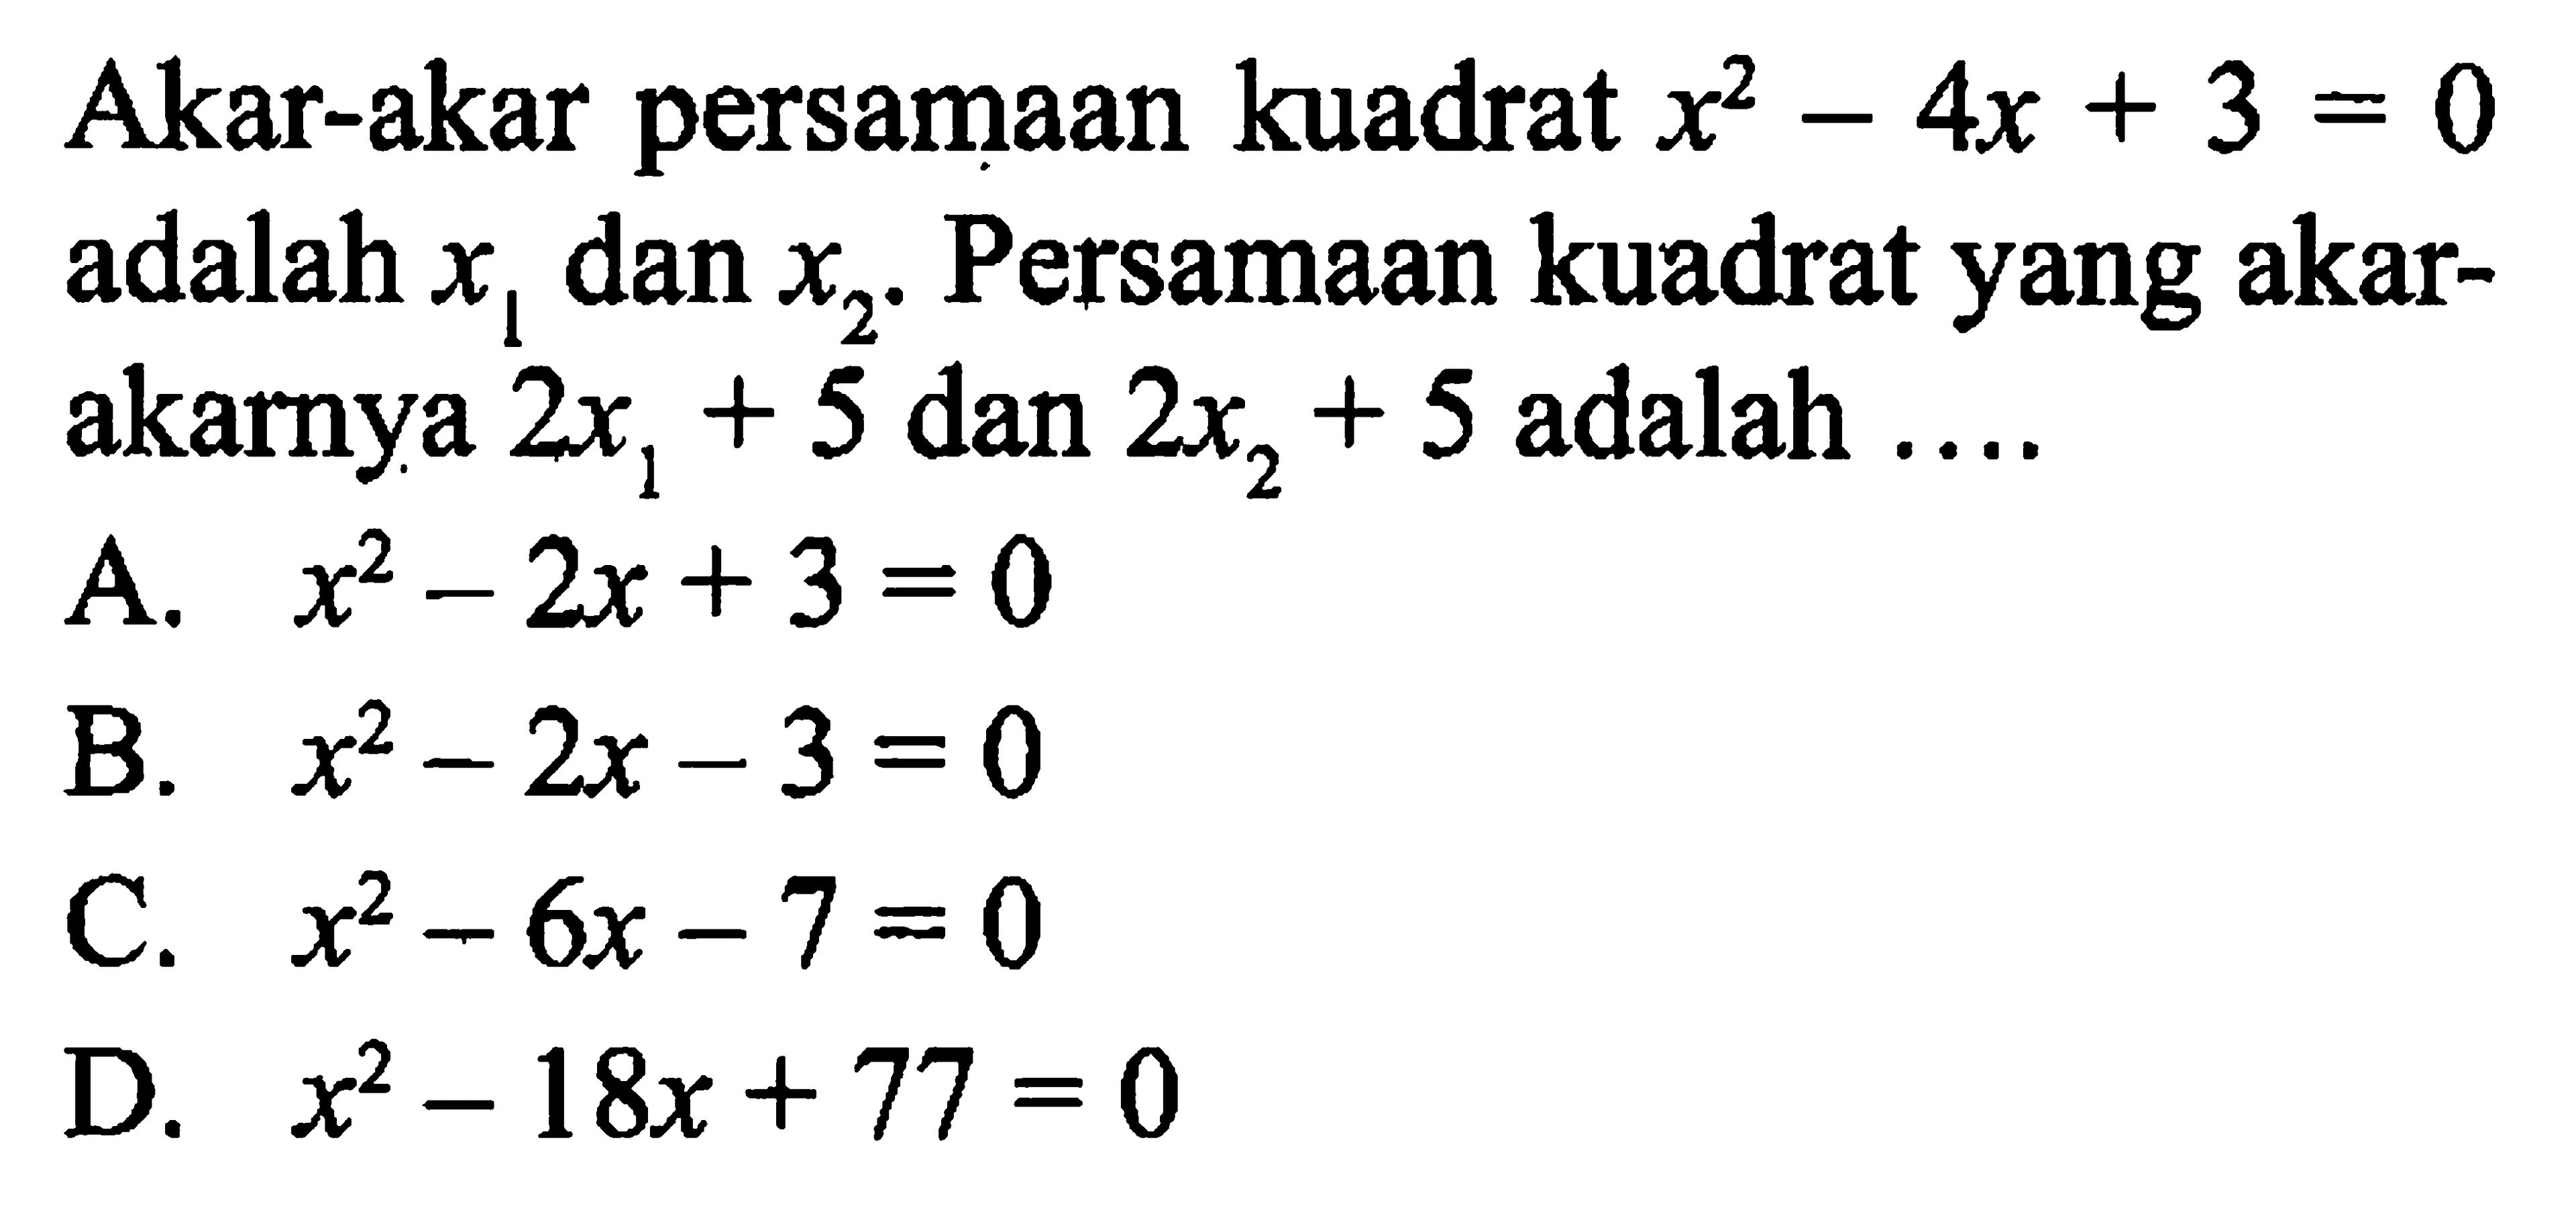 Akar-akar persamaan kuadrat x^2 - 4x + 3 = 0 adalah x1 dan x2. Persamaan kuadrat yang akar-akarnya 2x1 + 5 dan 2x2 + 5 adalah ....